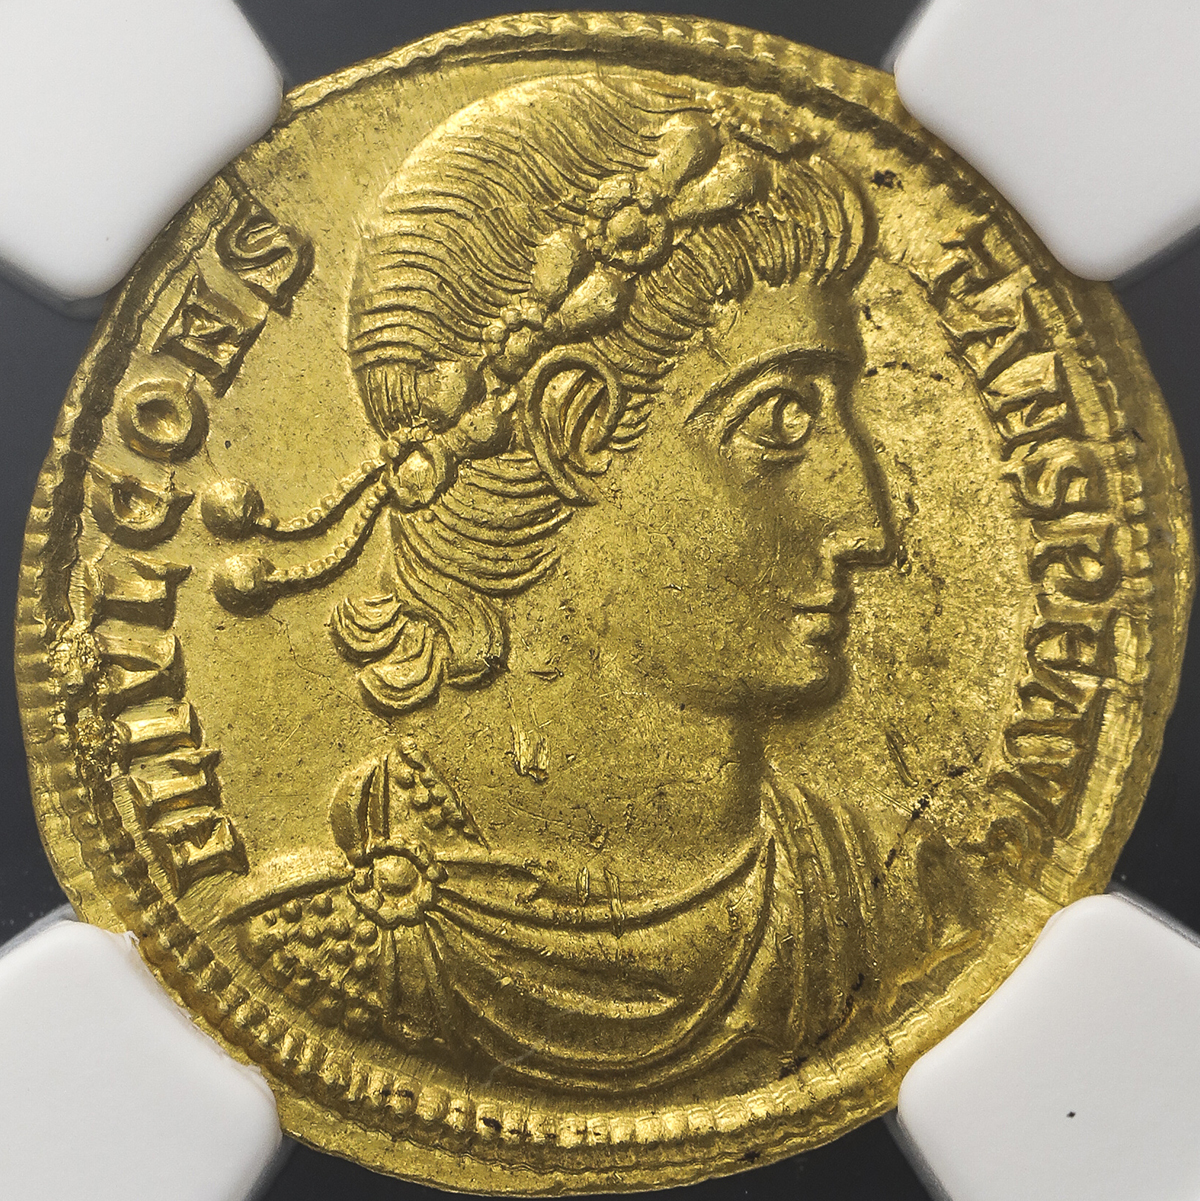 古代コイン】ローマ帝国AD337-350 コンスタンス1世 銅貨 AUグレード 